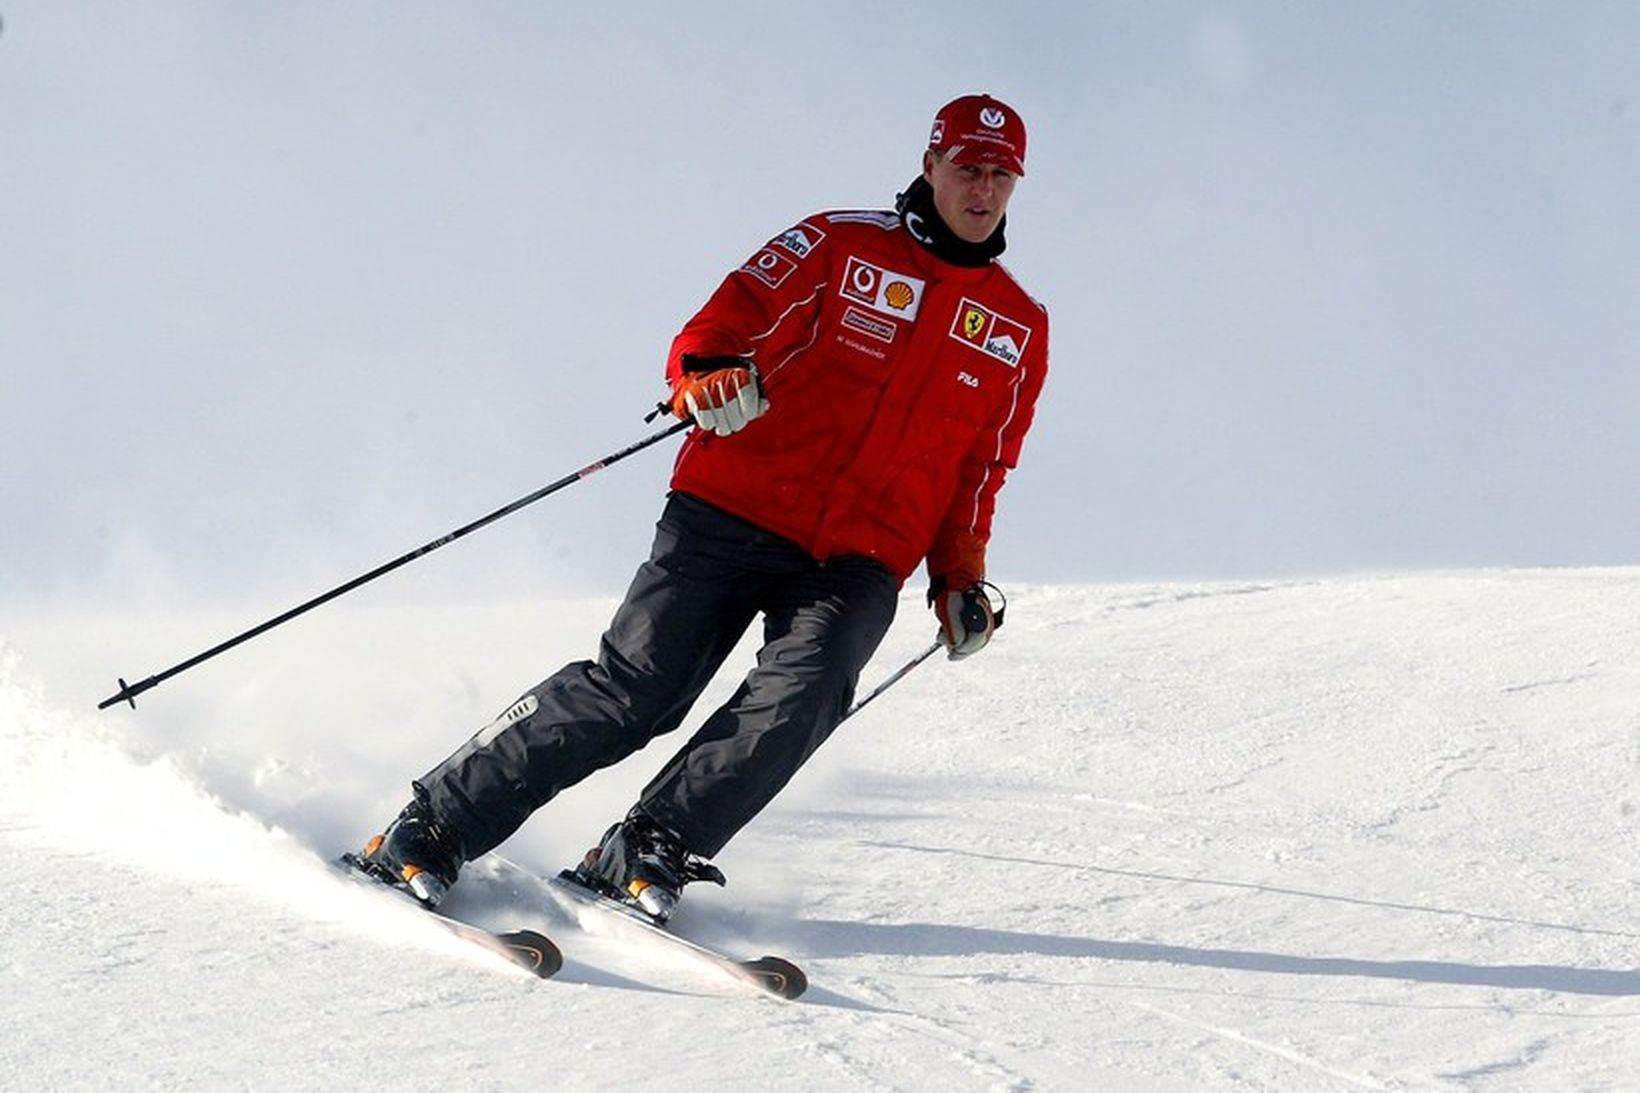 Michael Schumacher lenti í alvarlegu skíðaslysi árið 2013.